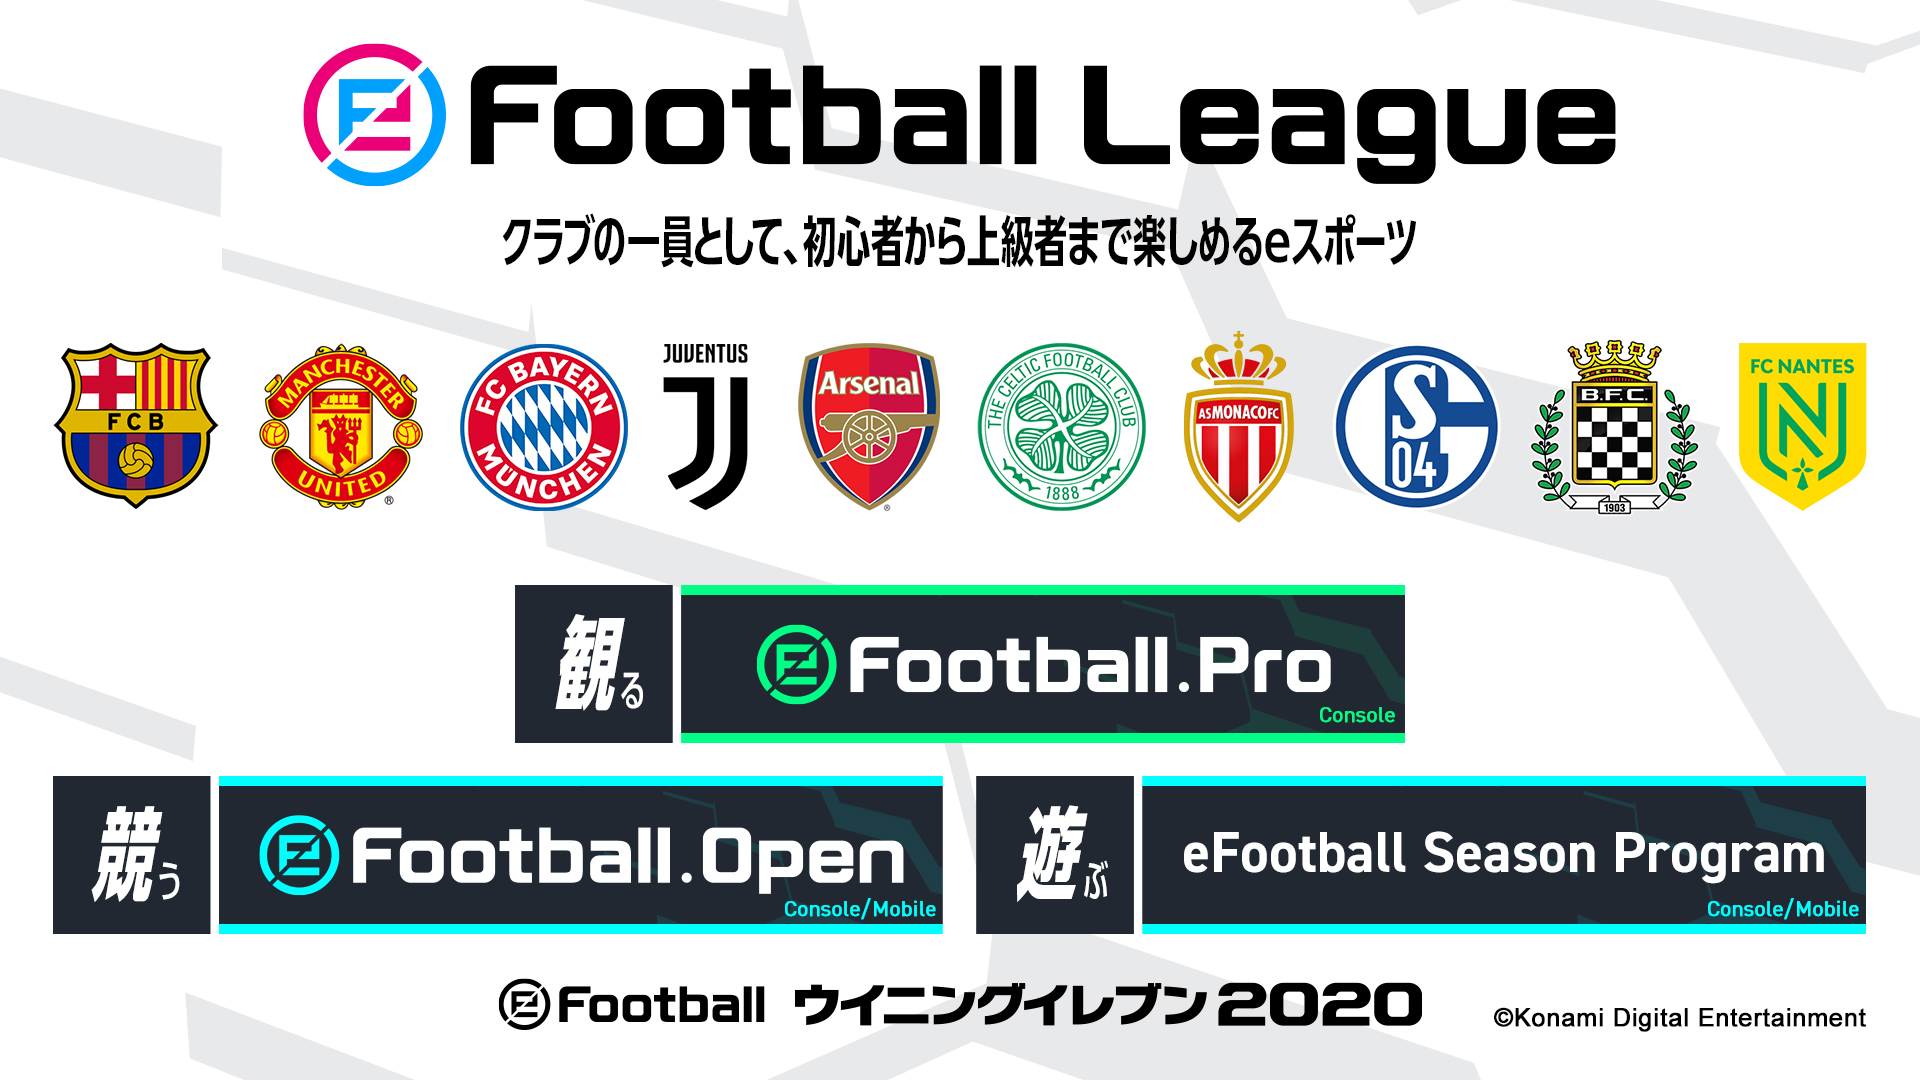 ウイニングイレブン シリーズの新たなeスポーツ Efootball League 19 シーズン が本日開幕 株式会社コナミデジタルエンタテインメントのプレスリリース